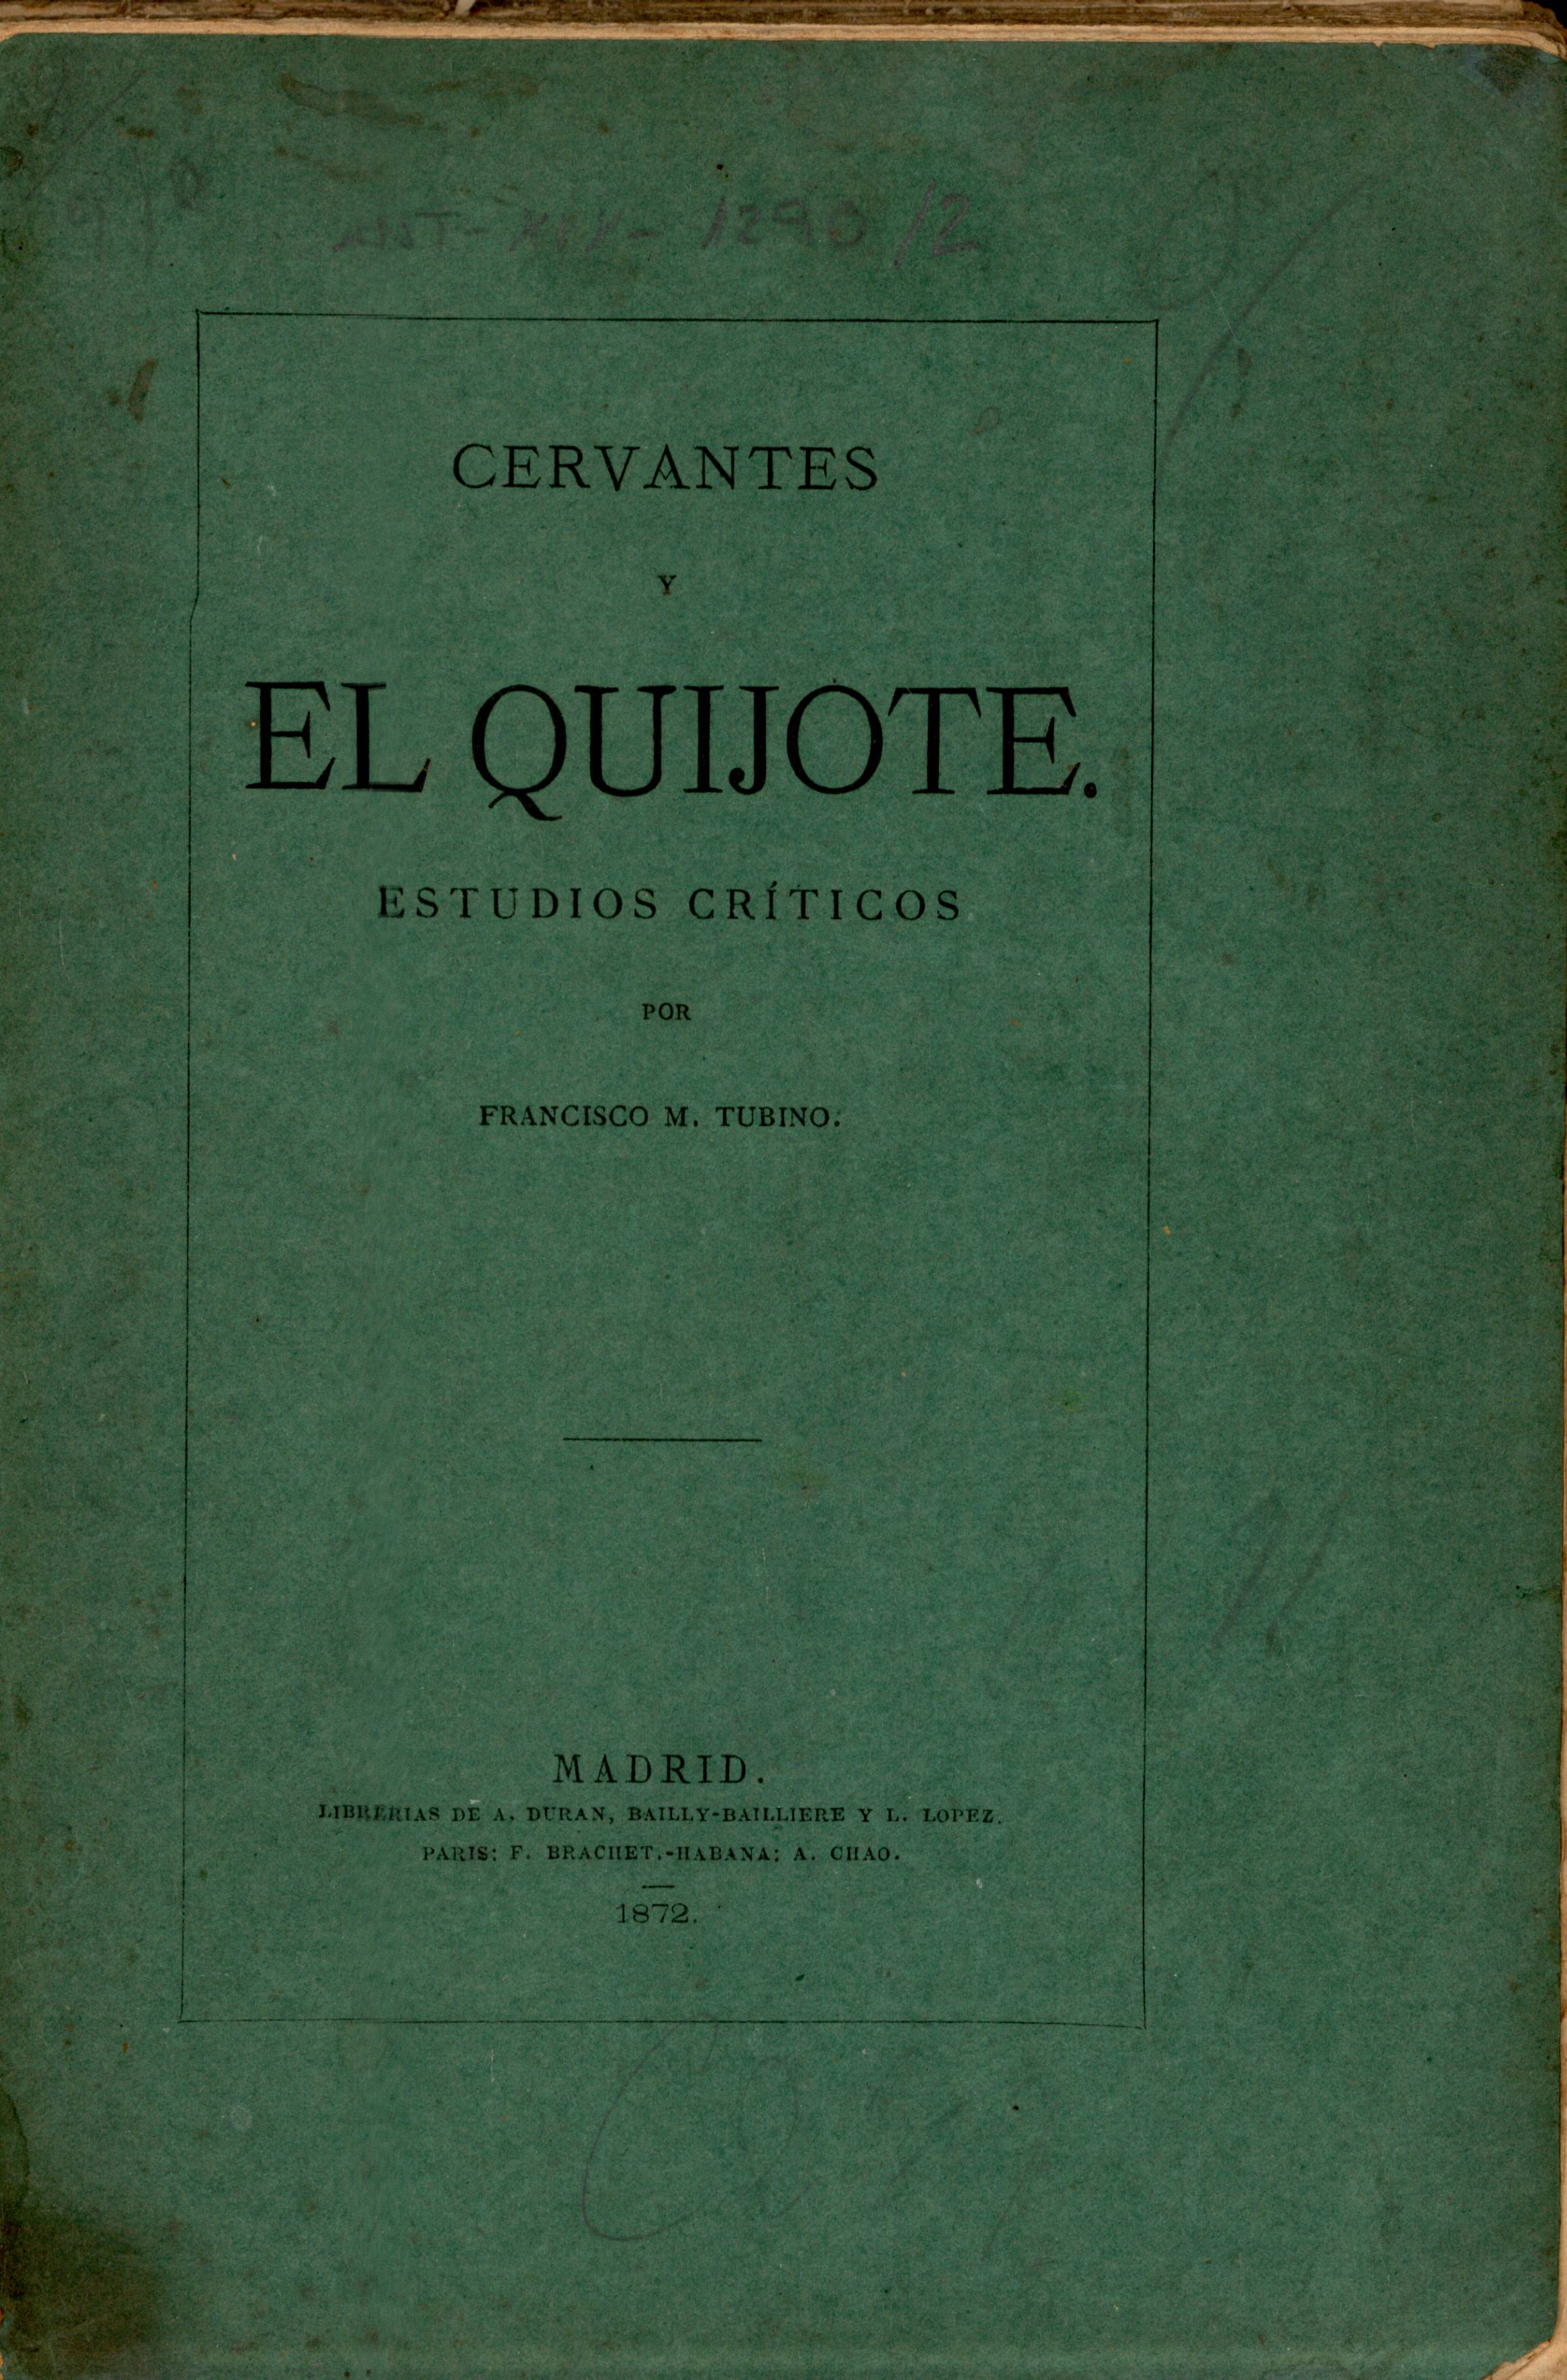 Cervantes y el Quijote. Estudios críticos